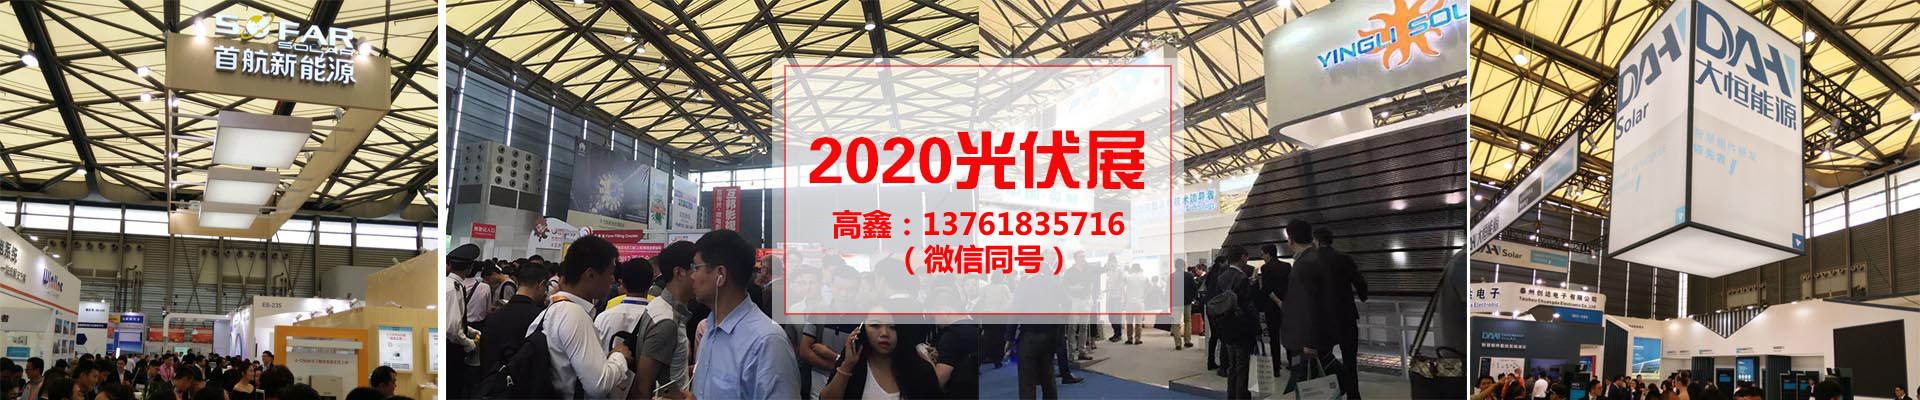 2020太阳能光伏与储能展 2020SNECPV 日本大阪太阳能照明展